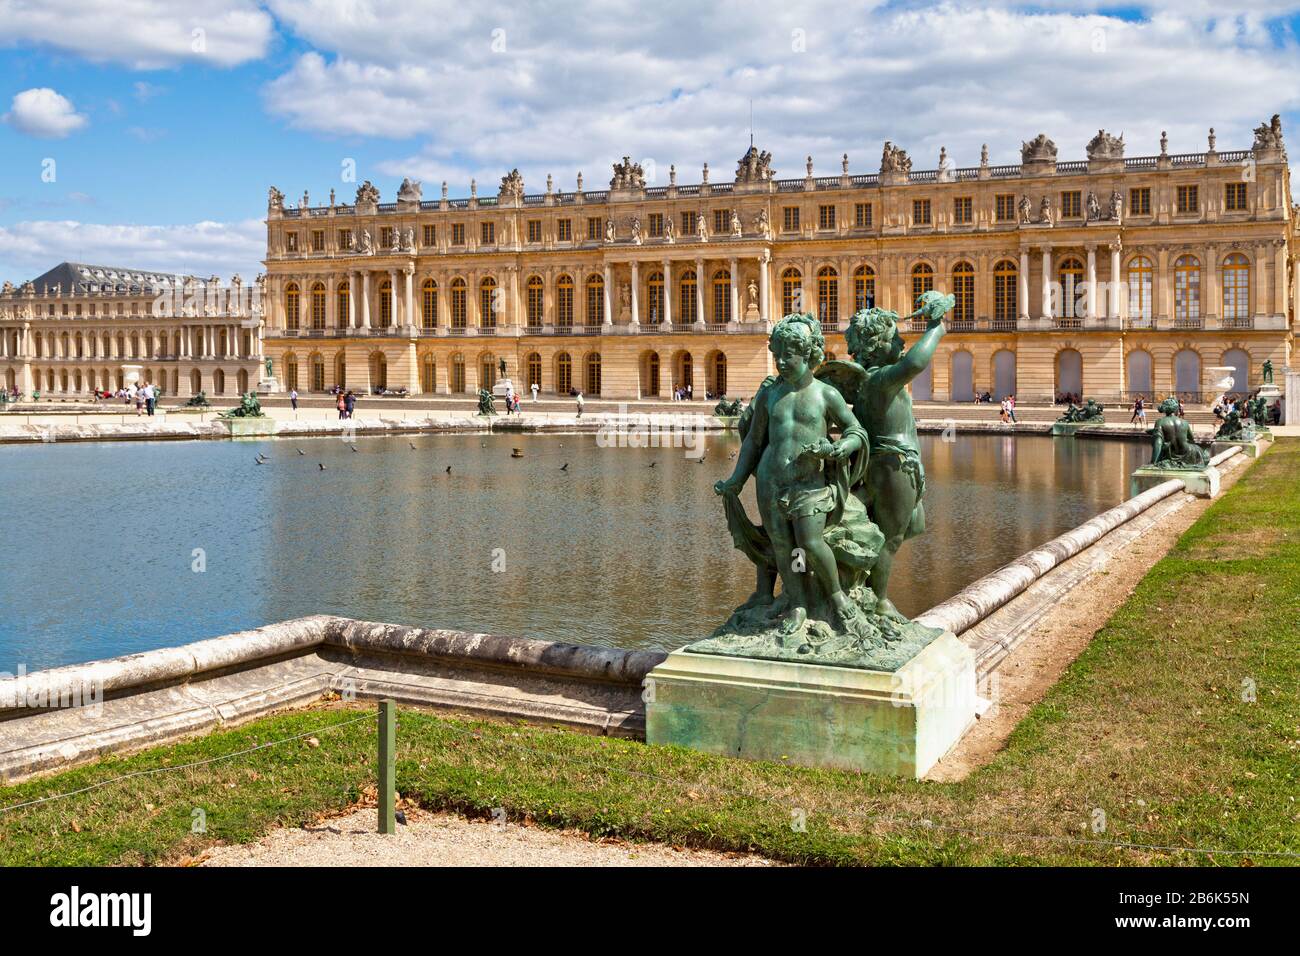 Versailles, Frankreich - 20. August 2017: Bronzestatue von drei Cherubs, die am Rande eines Beckens des Bassin du Midi in den Gärten von Versailles aufgestellt wurden, Stockfoto